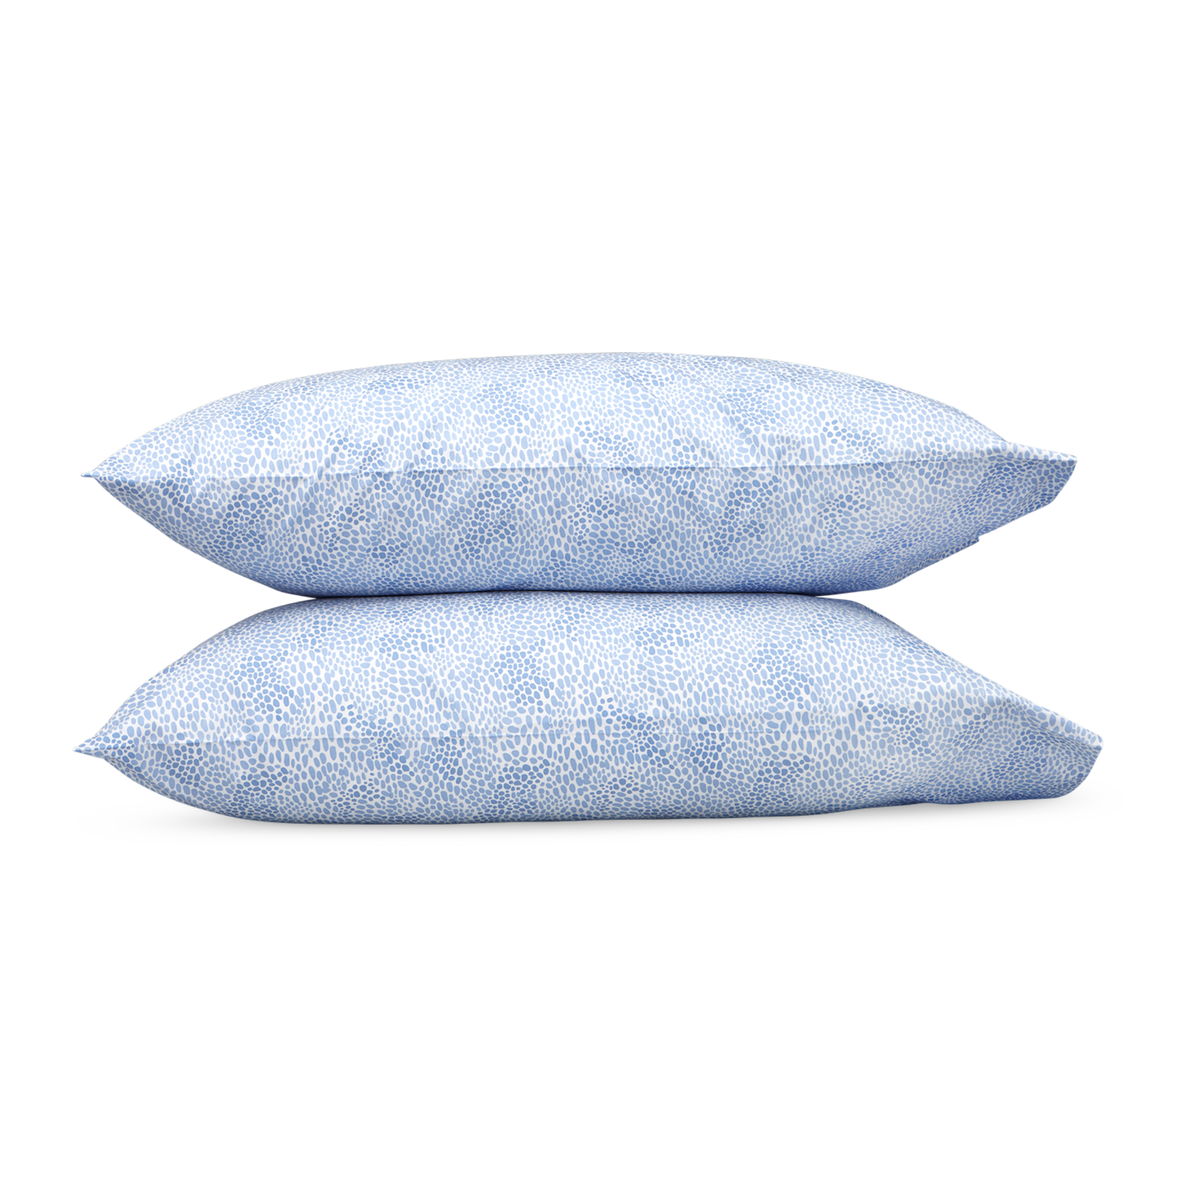 Pair of Pillowcases of Lulu DK Matouk Nikita Bedding in Azure Color